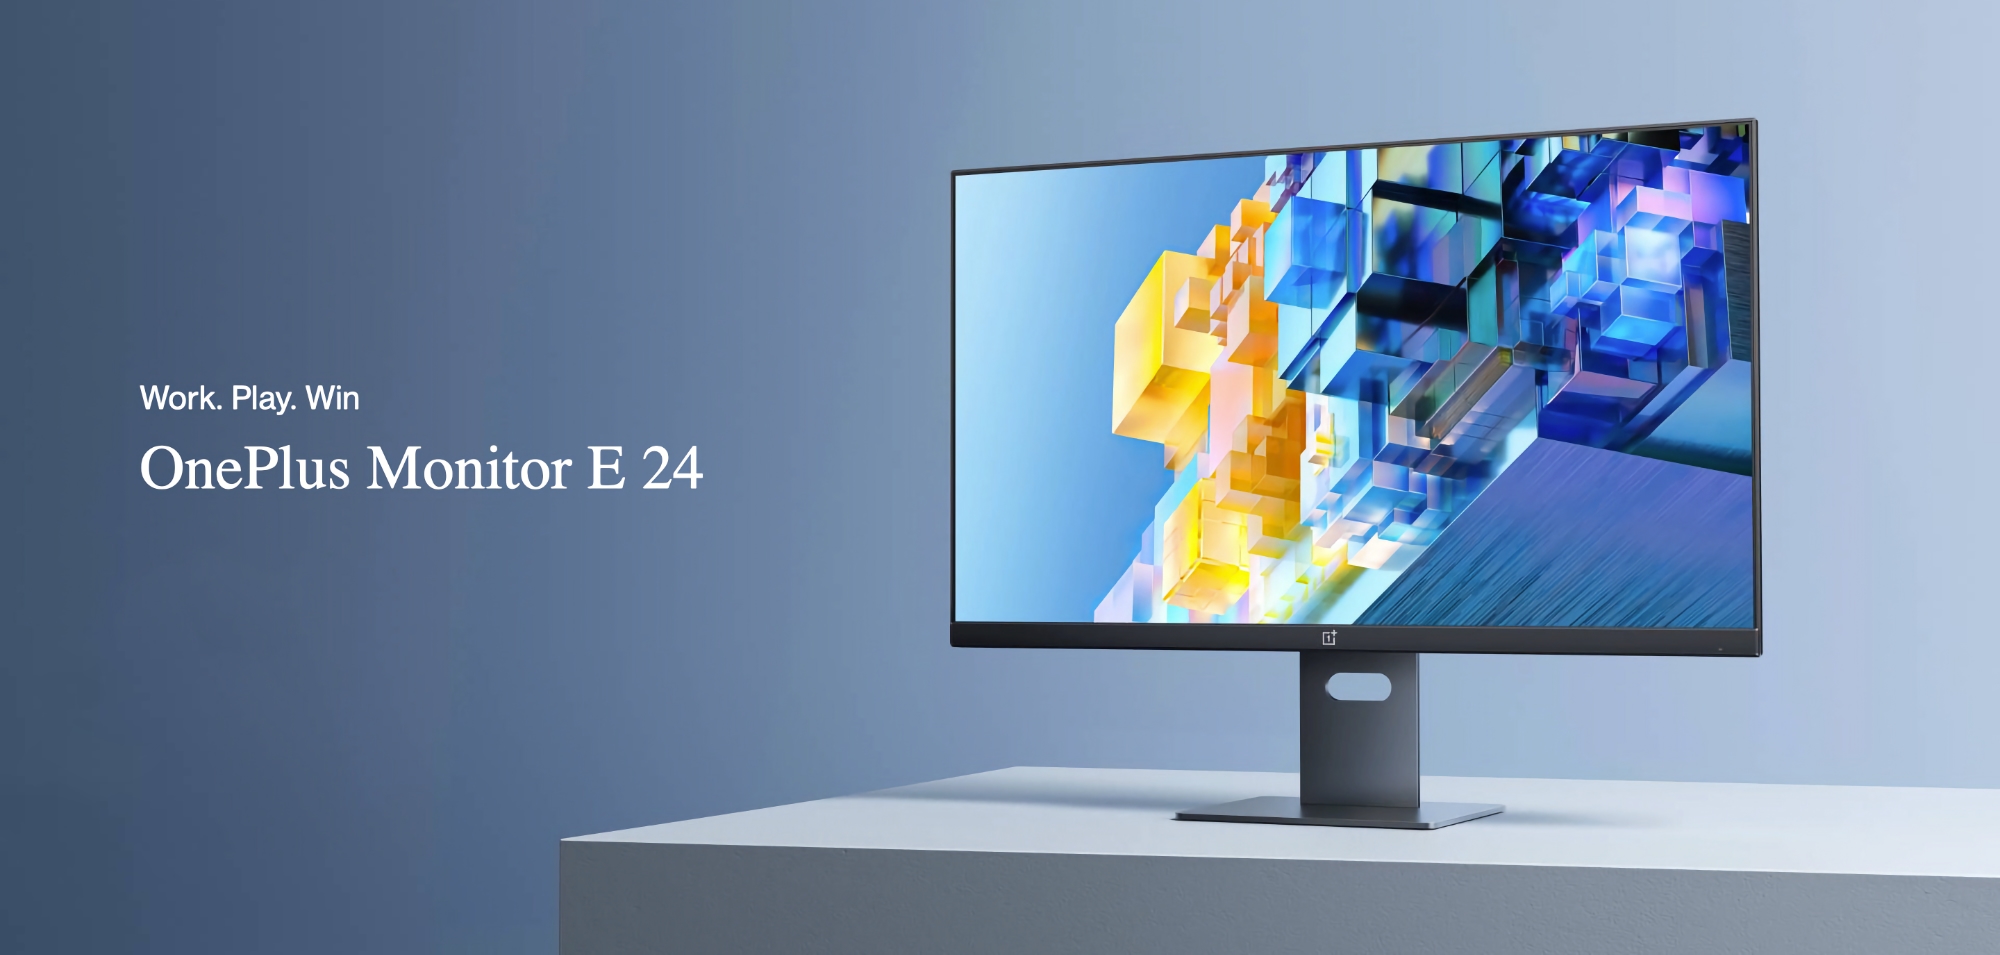 OnePlus Monitor E: monitor da 24 pollici con schermo IPS FHD a 75 Hz e porta USB-C con 18W Power Delivery